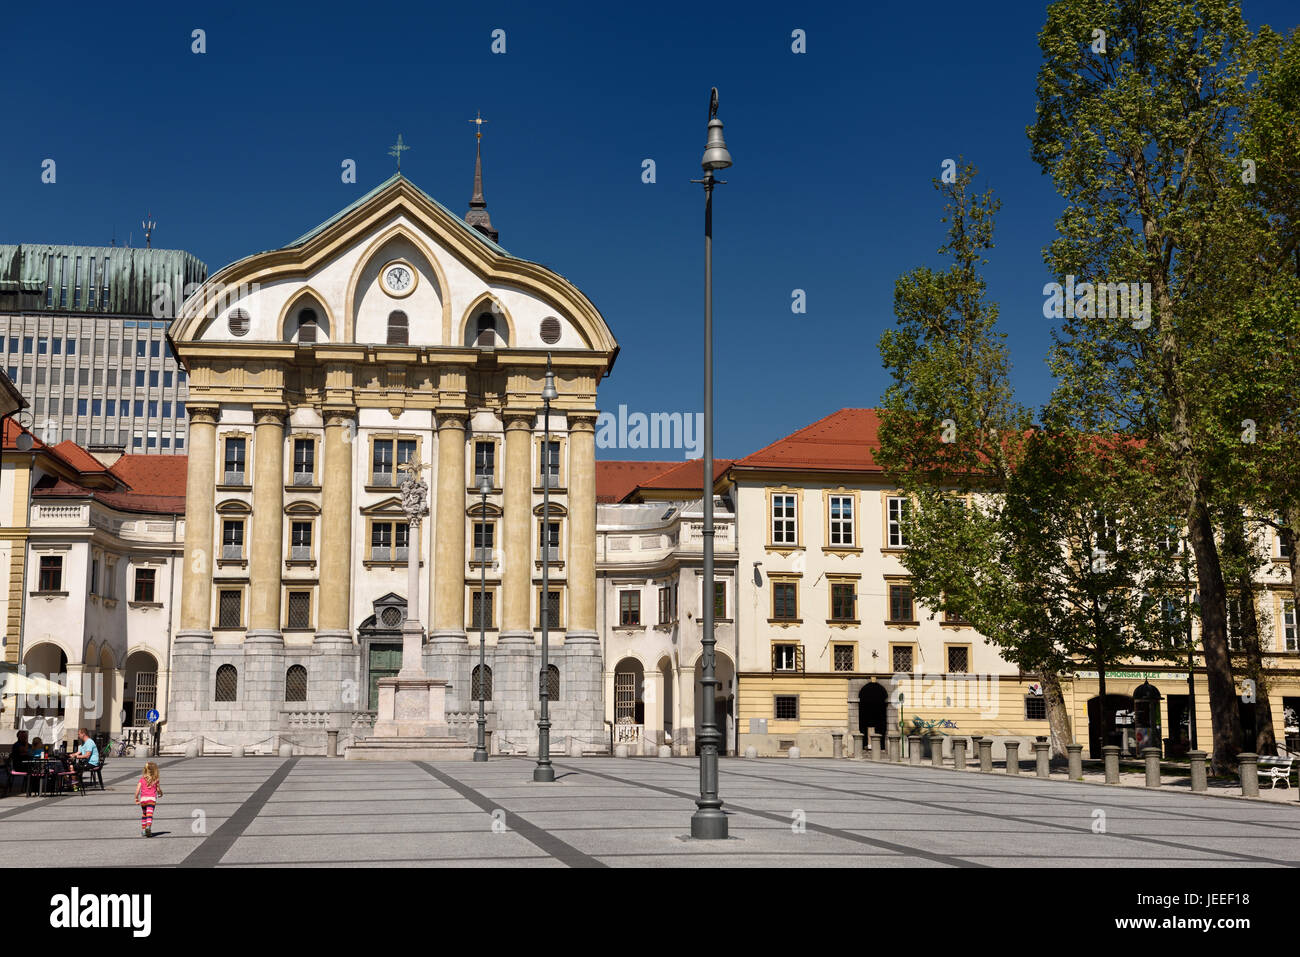 Blauer Himmel und rosa Mädchen Kongressplatz mit Ursulinen-Kirche der Heiligen Dreifaltigkeit mit Marmor-Statuen der Heiligen Dreifaltigkeit Spalte in Ljubljana Slowenien Stockfoto